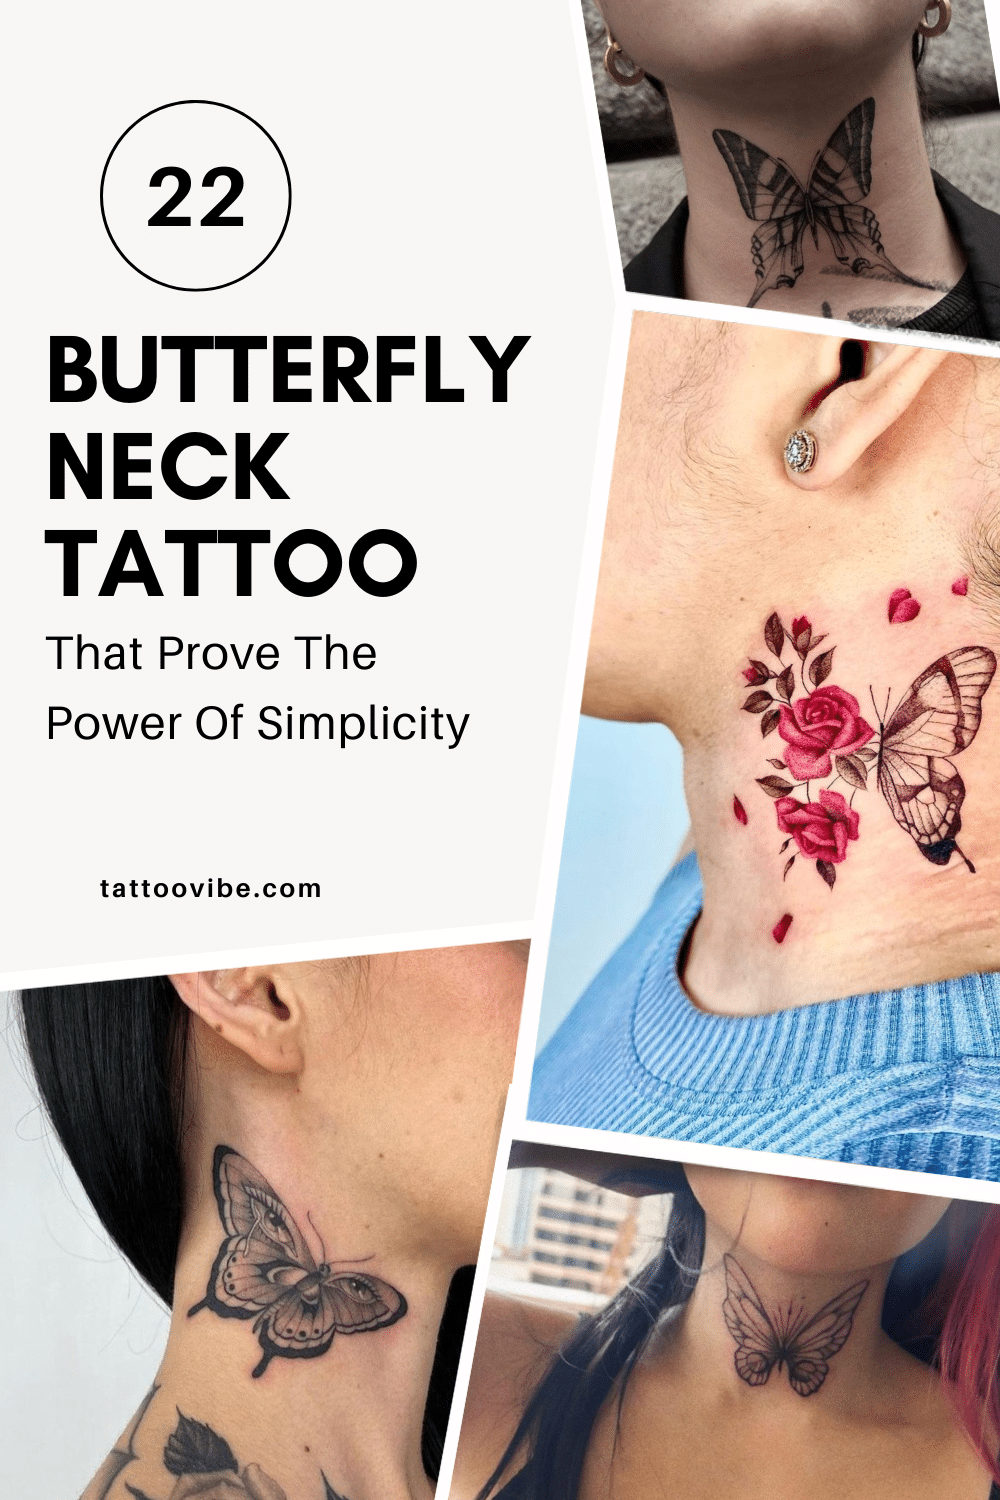 22 tatuaggi sul collo a forma di farfalla che dimostrano il potere della semplicità